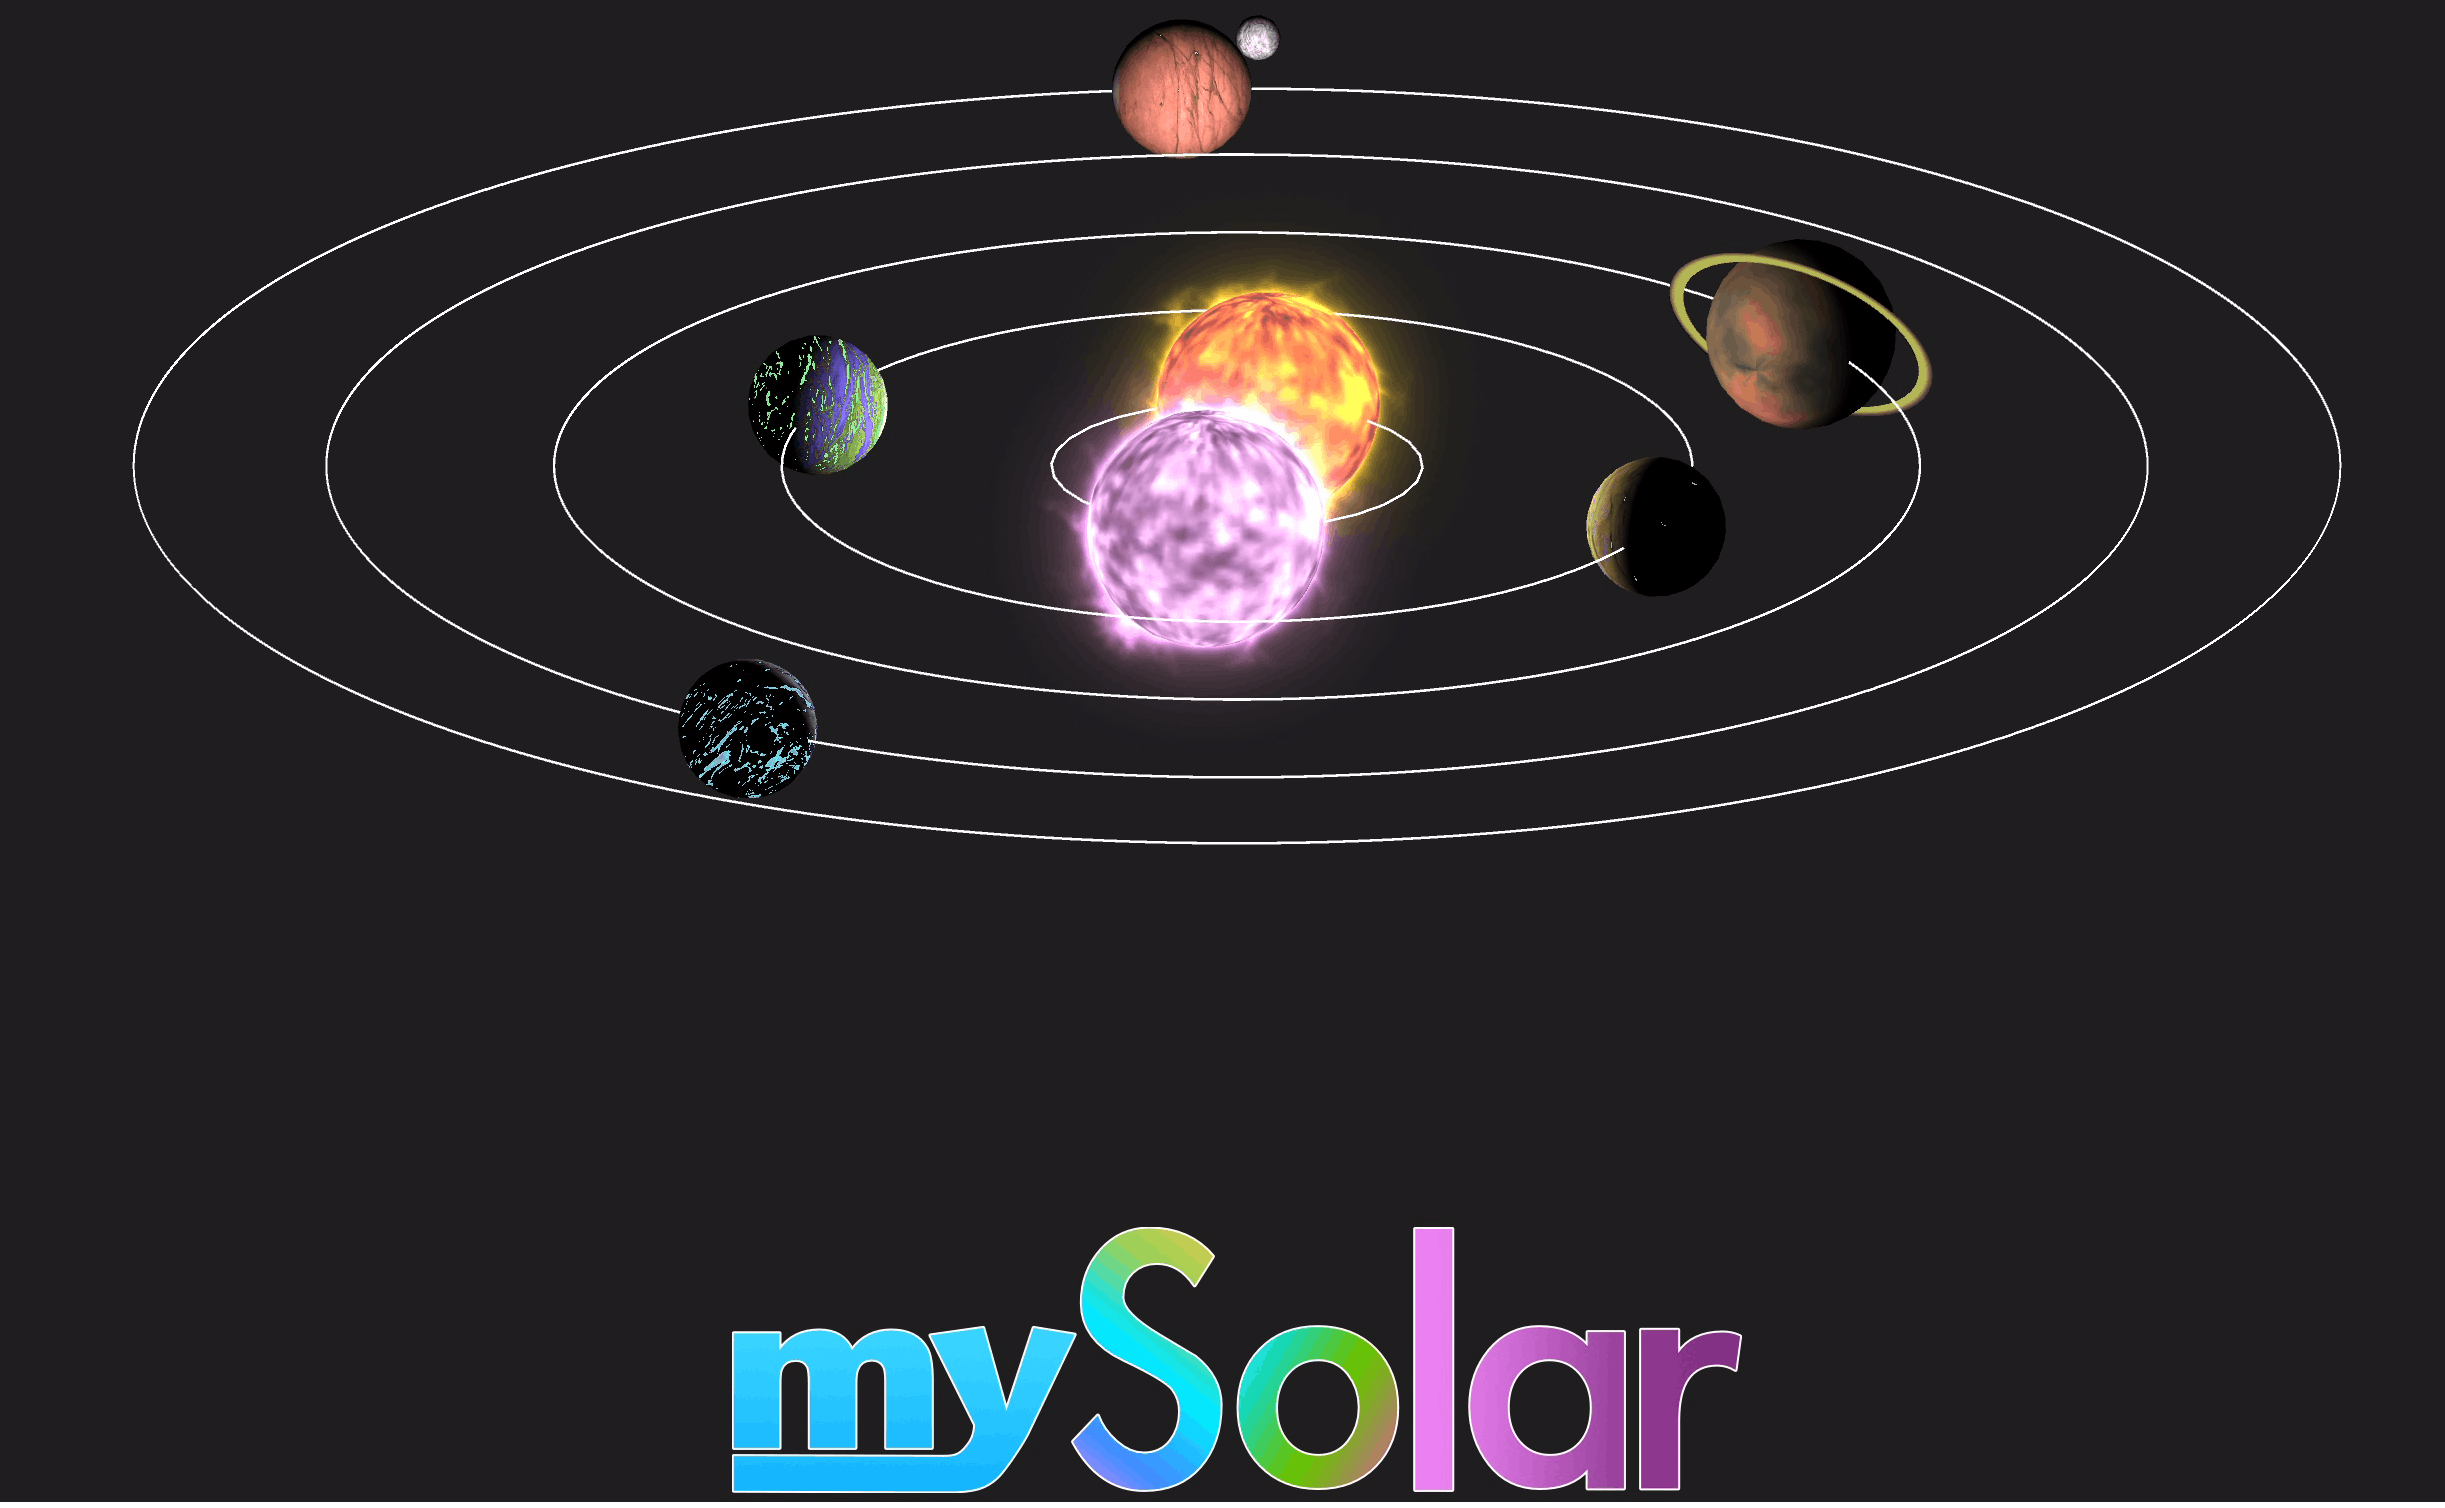 mySolar: Build Your Planets